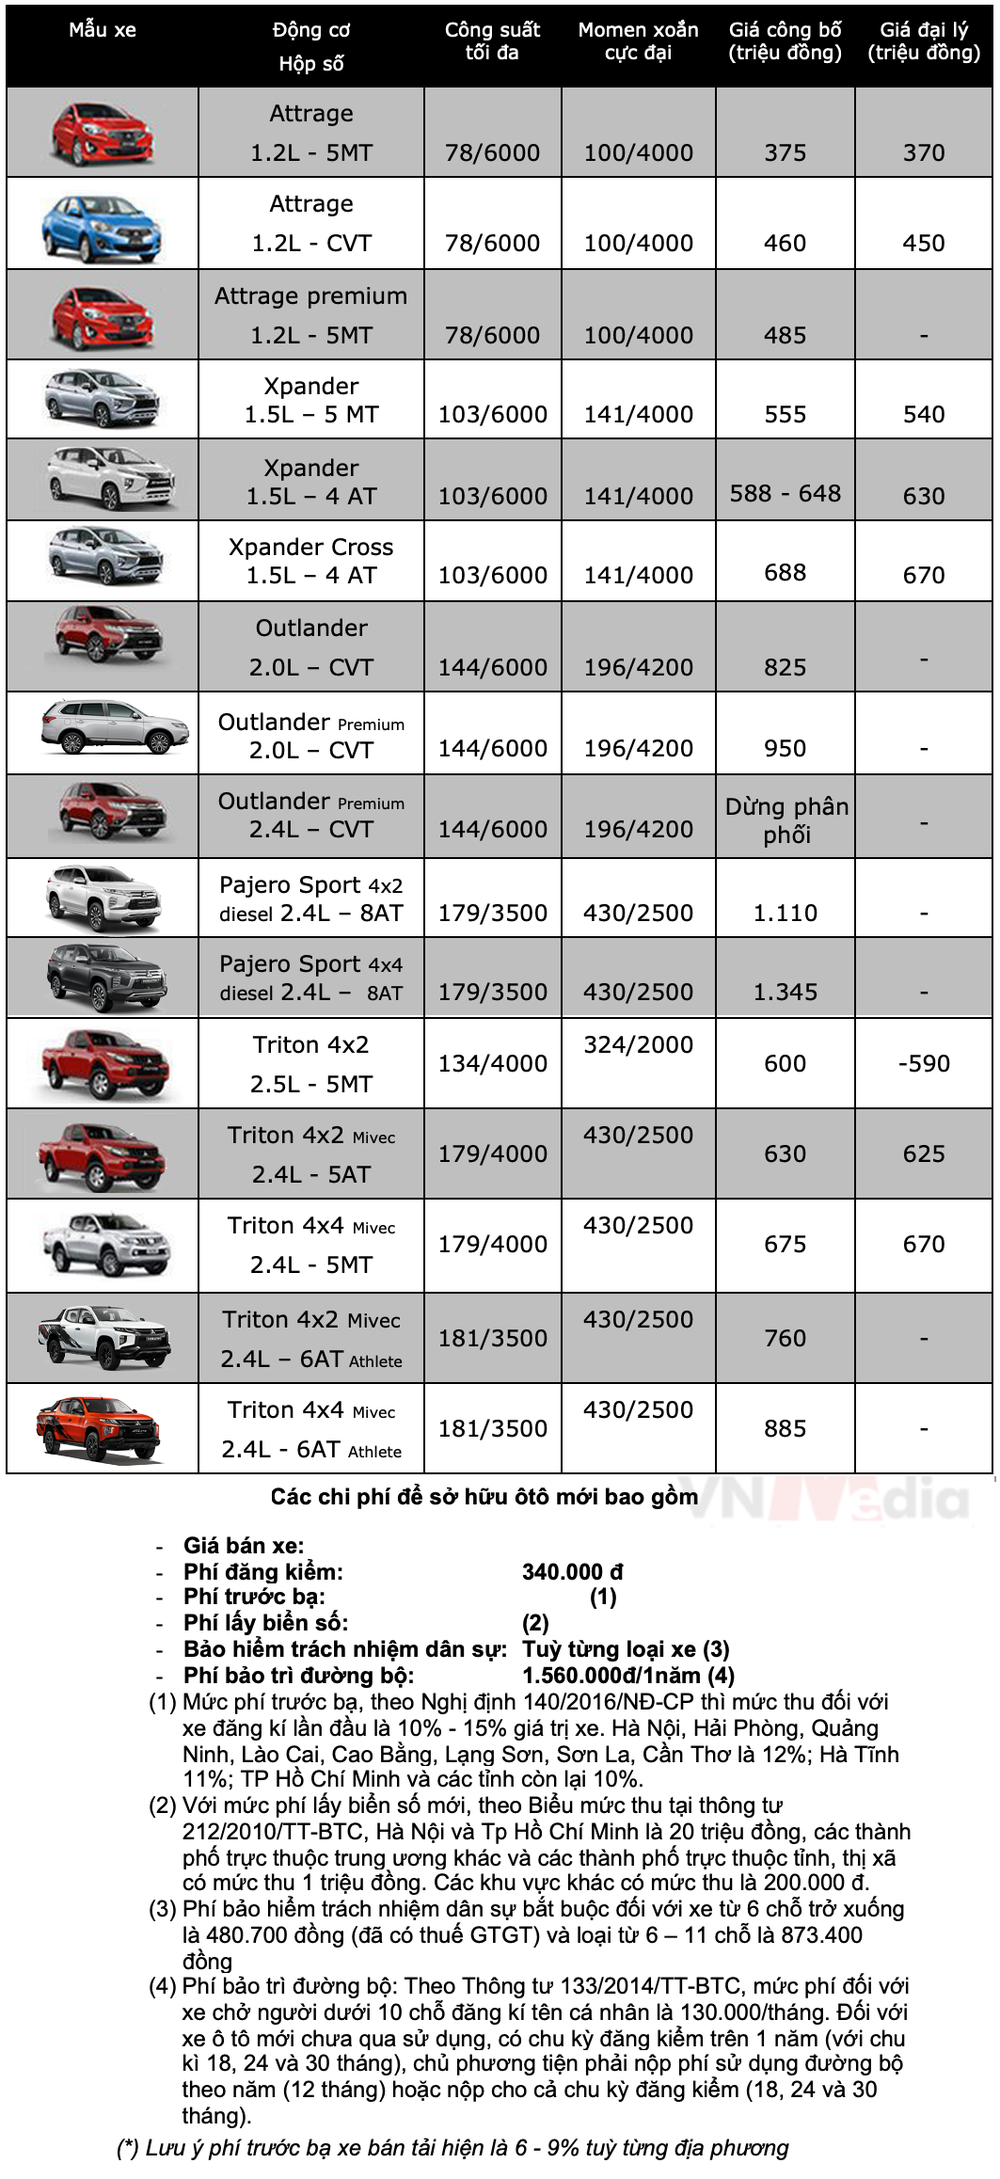 Bảng giá xe Mitsubishi tháng 2: Mitsubishi Attrage nhận ưu đãi gần 27 triệu đồng - Ảnh 2.